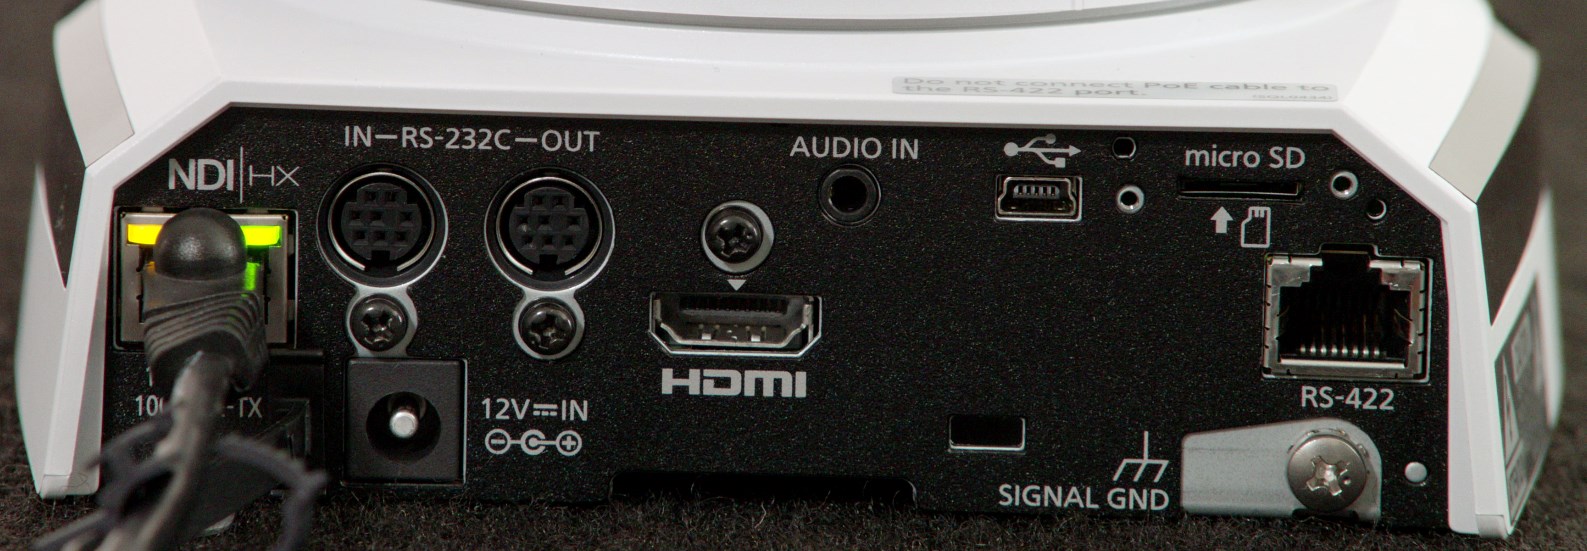 AW-HN38H (HDMI)